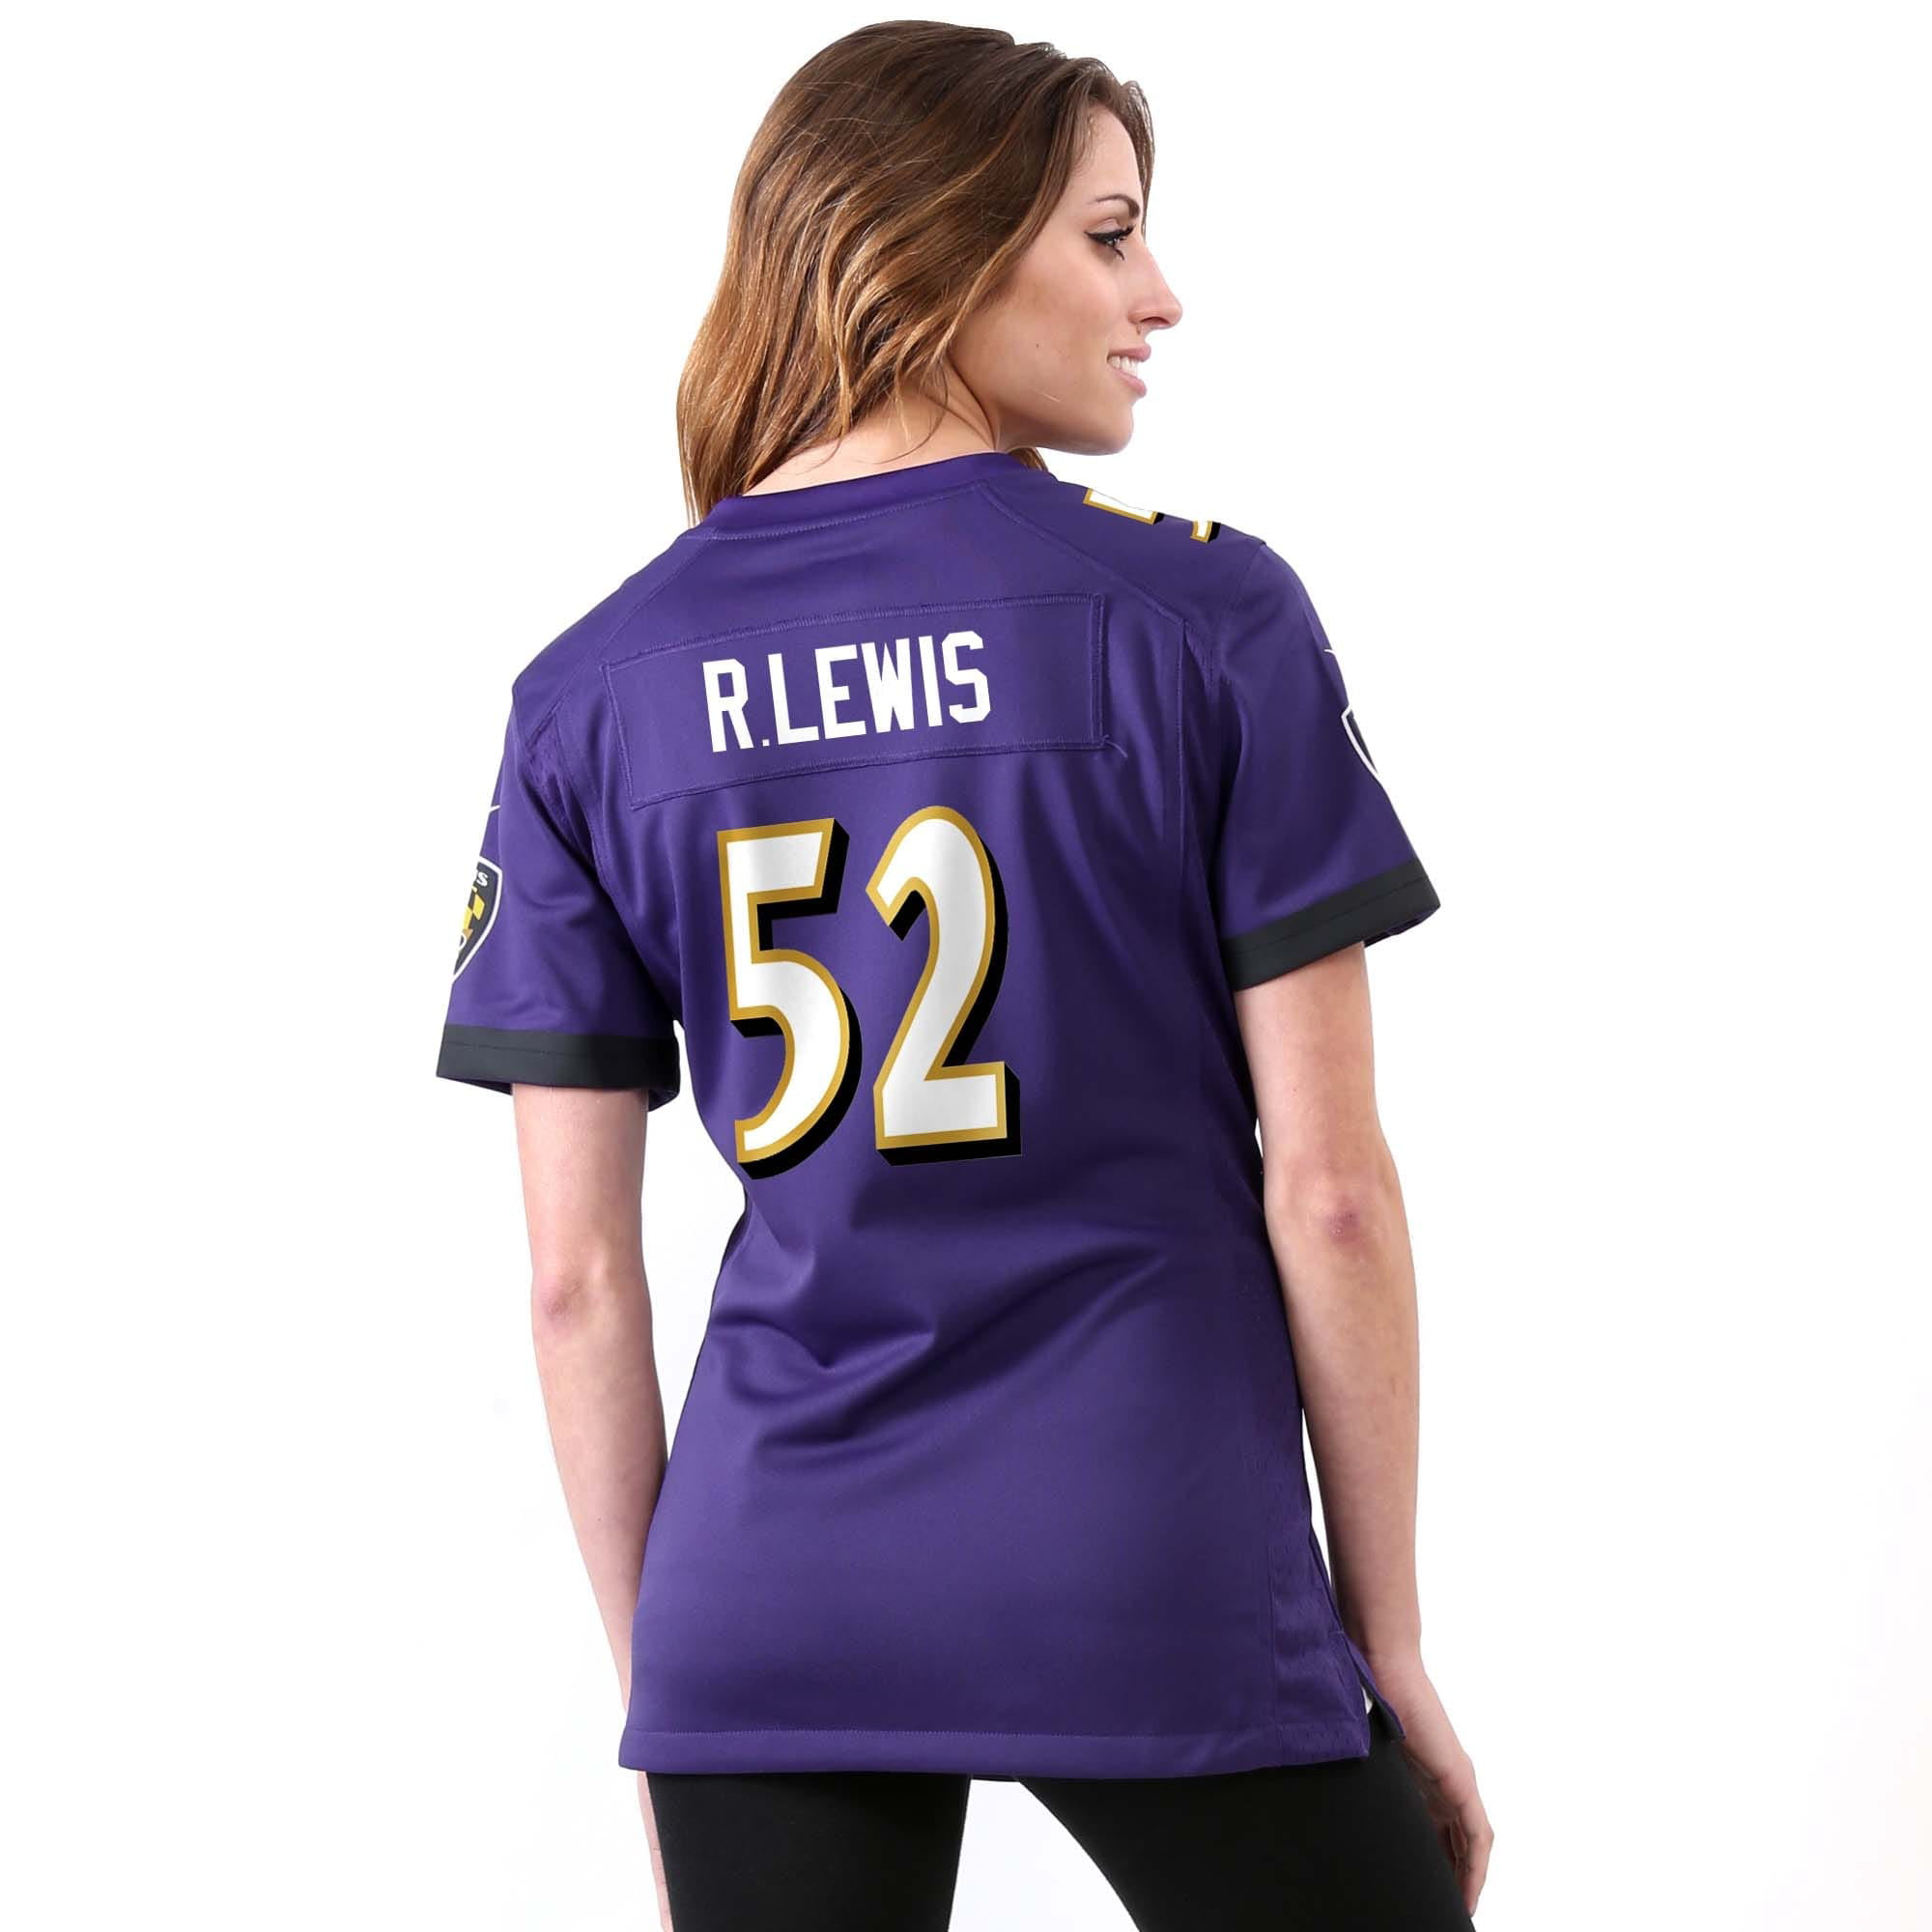 Ray Lewis Baltimore Ravens Nike Women's Game Jersey - Purple